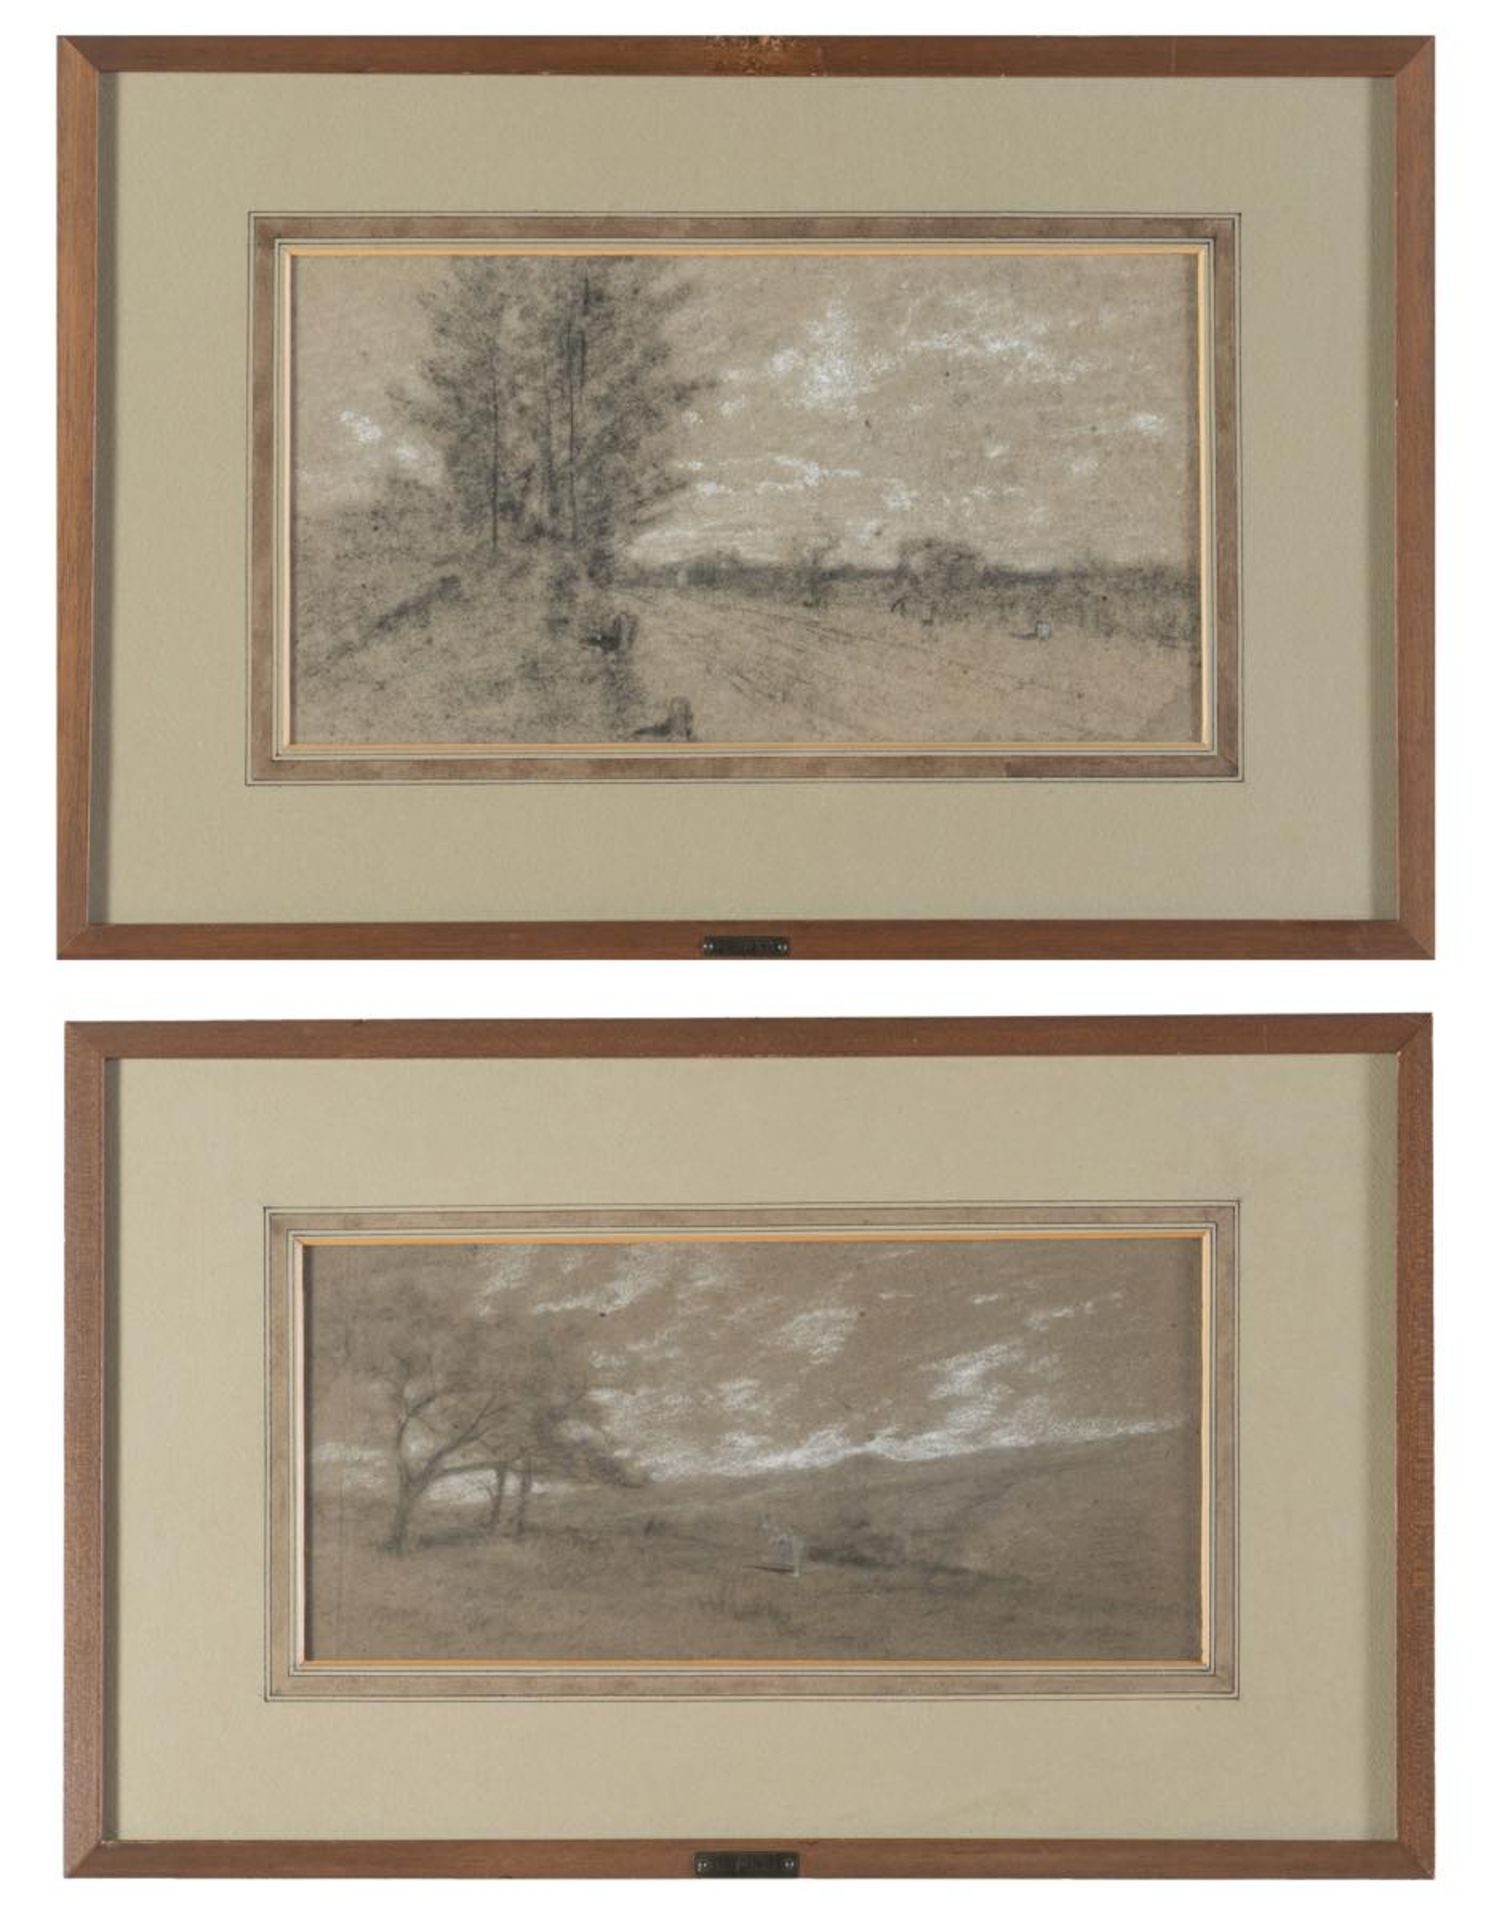 Coriolano Vighi (Firenze 1852 - Bologna 1905), “Paesaggi”. Coppia di tecniche miste su carta,